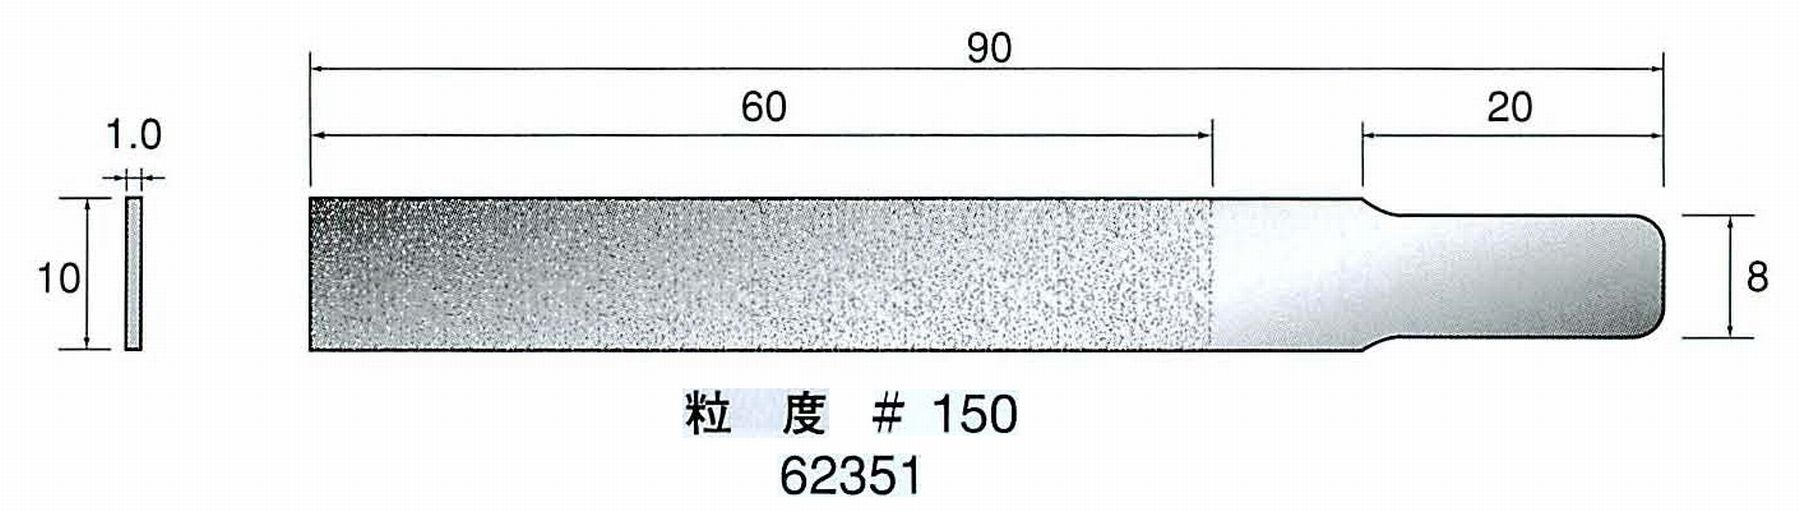 ナカニシ/NAKANISHI ハンディタイプ 電動・エアーヤスリ(往復動) ラスター専用工具 ダイヤモンドヤスリフラットタイプ 62351